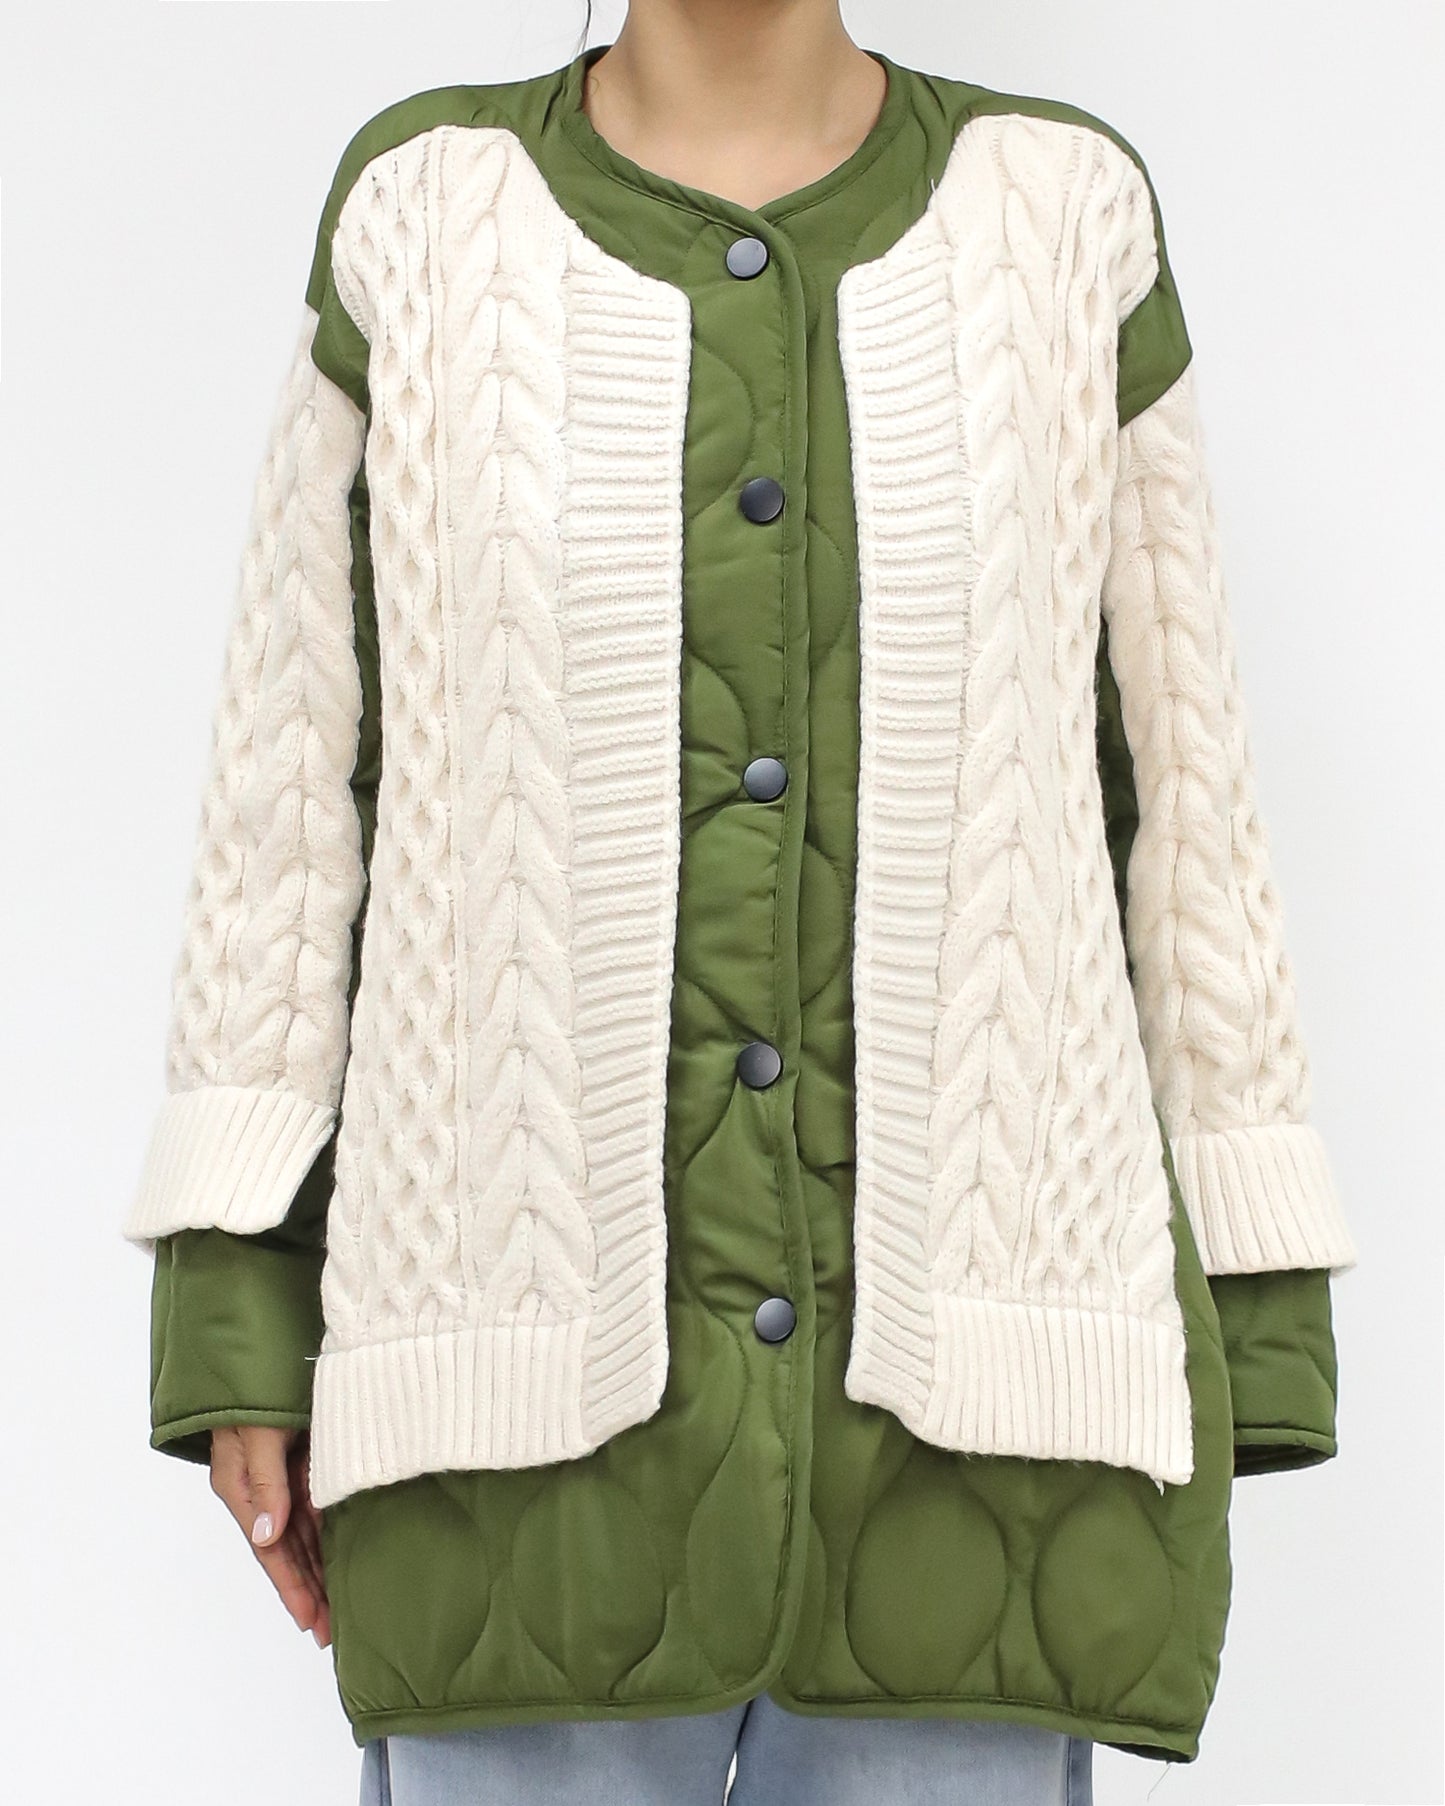 綠色絎縫和象牙色針織外套 *預購*